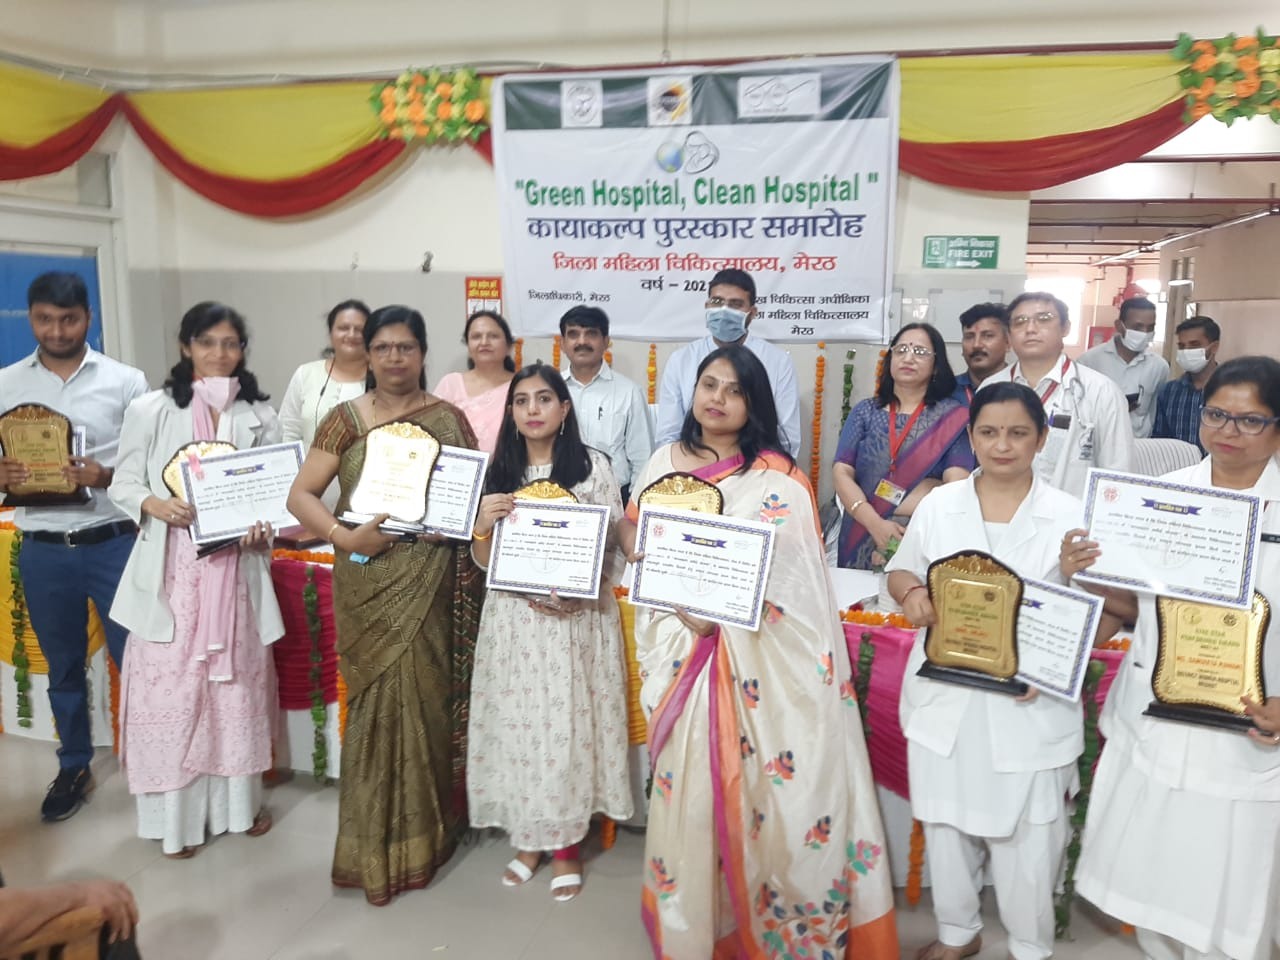 Kayakalp Award : मेरठ महिला जिला अस्पताल को प्रदेश में मिला कायाकल्प अवार्ड में तीसरा स्थान